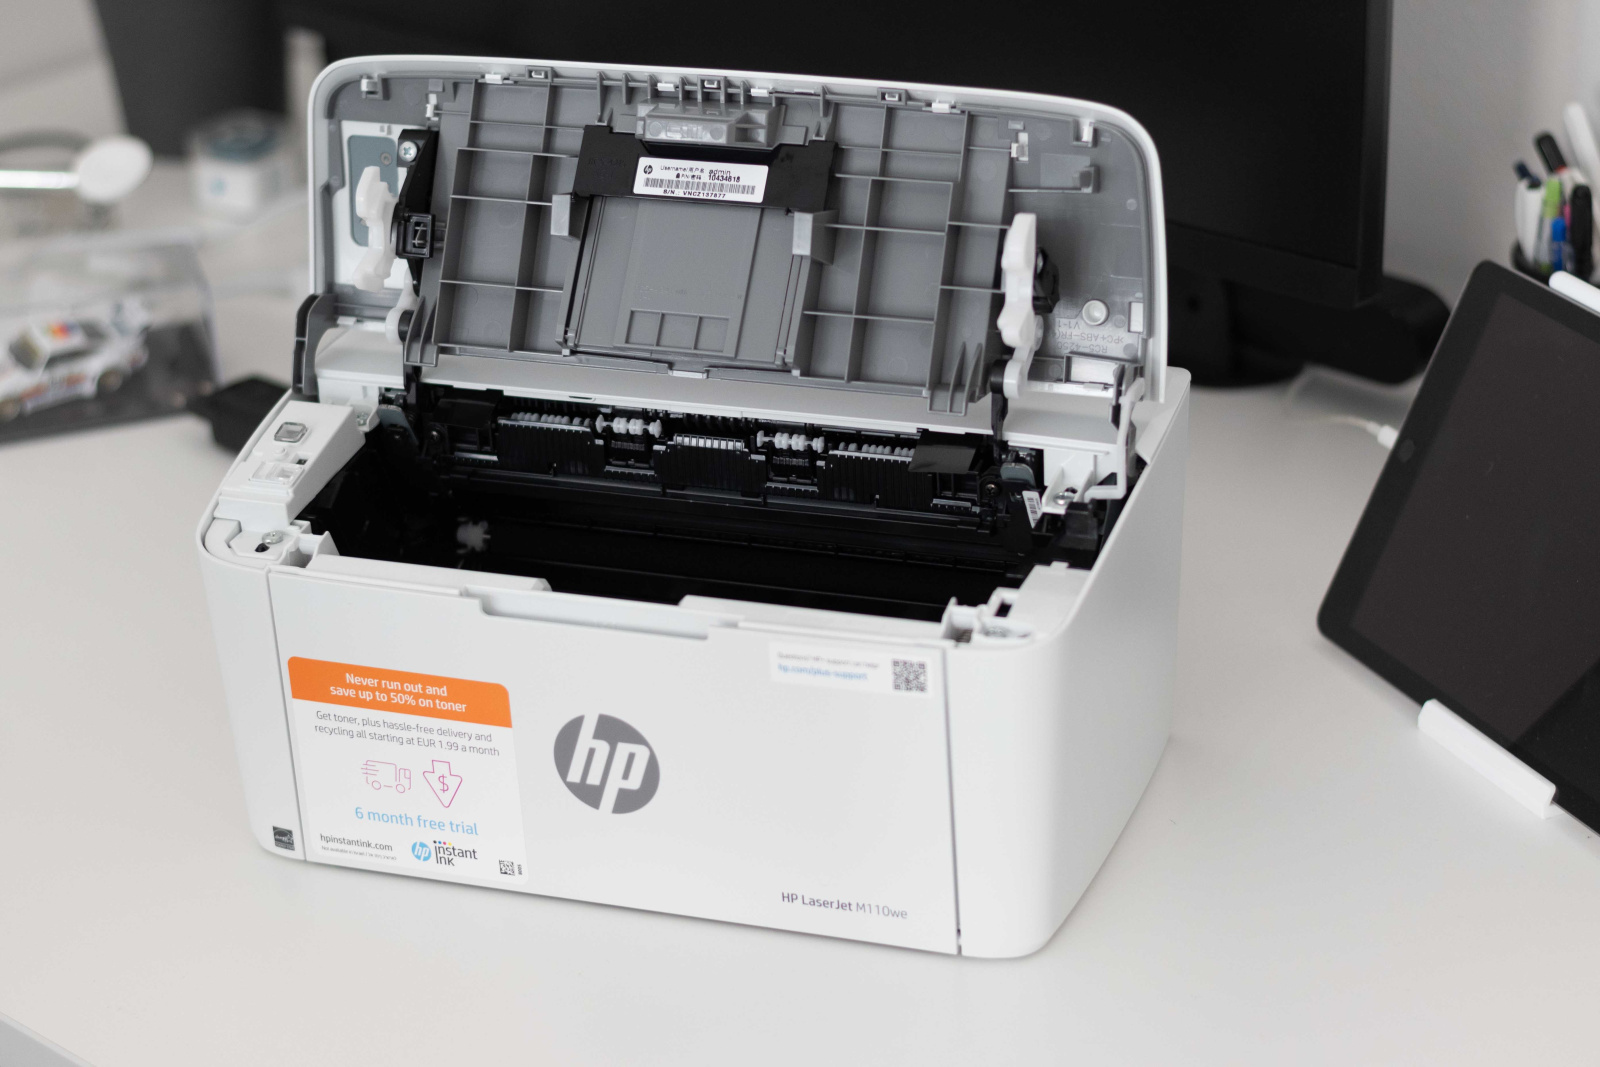 Tiskárna HP LaserJet M110we s odklopenou horní stranou pro vložení toneru. 